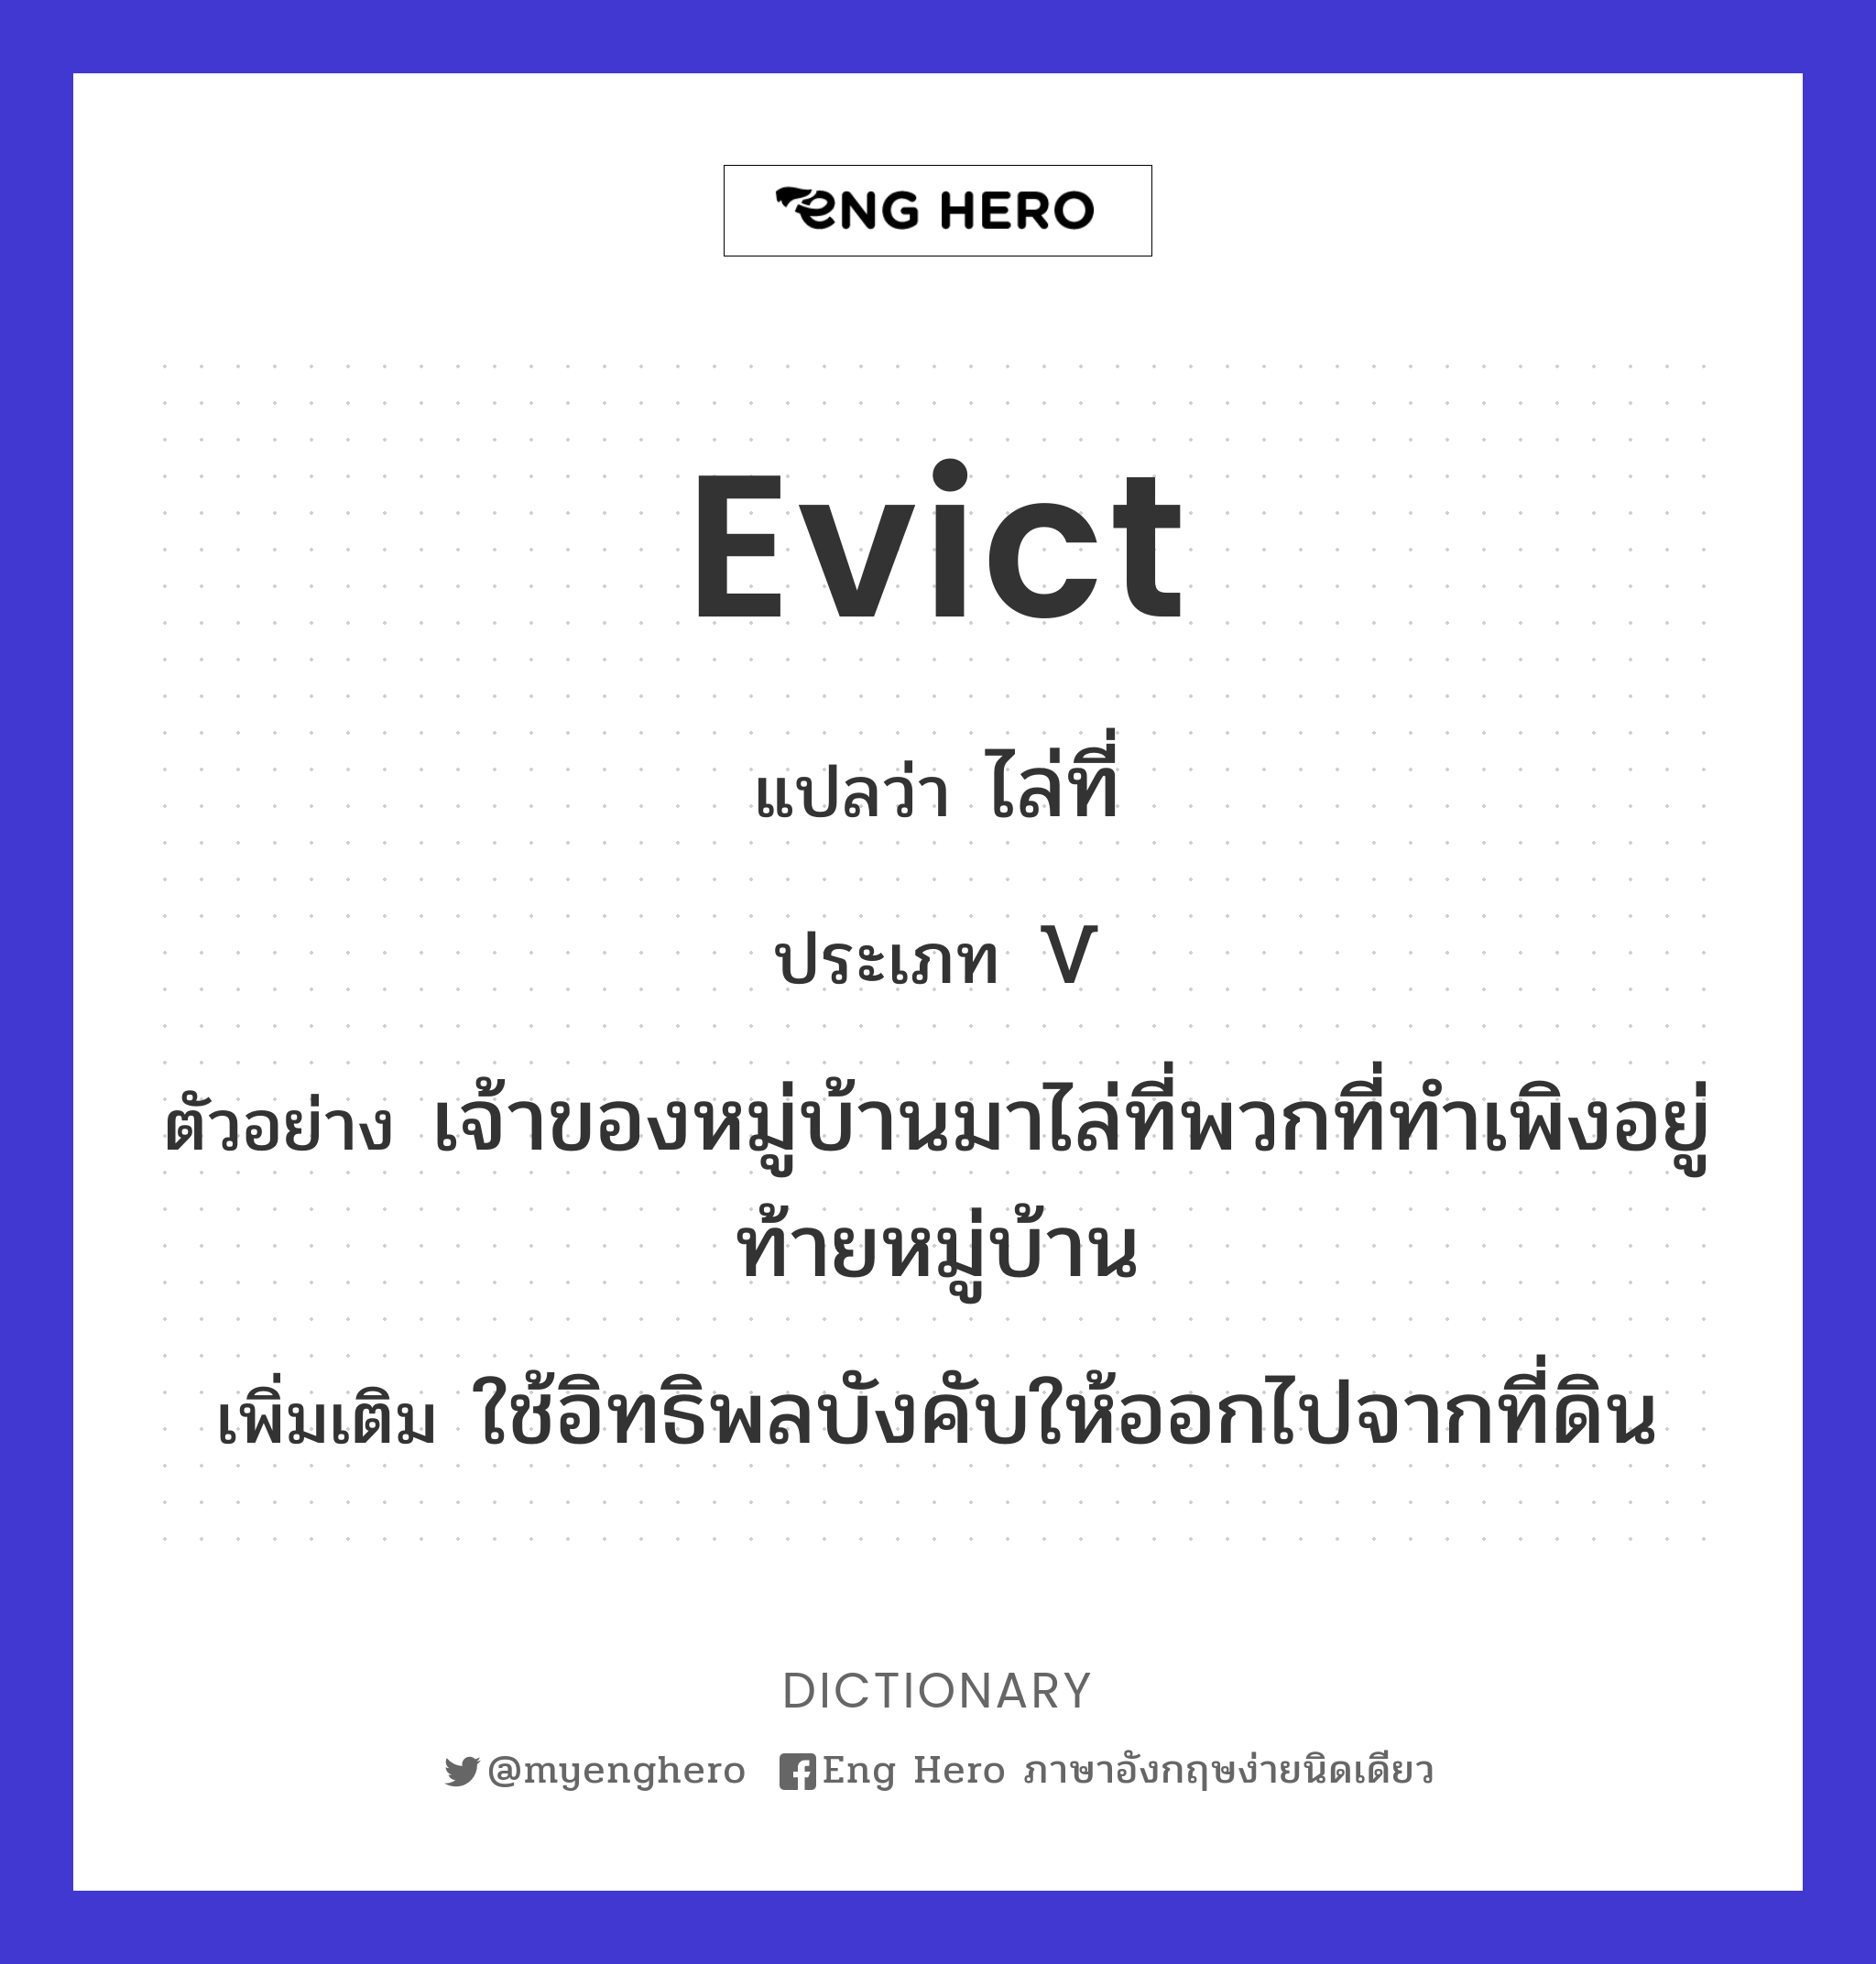 evict